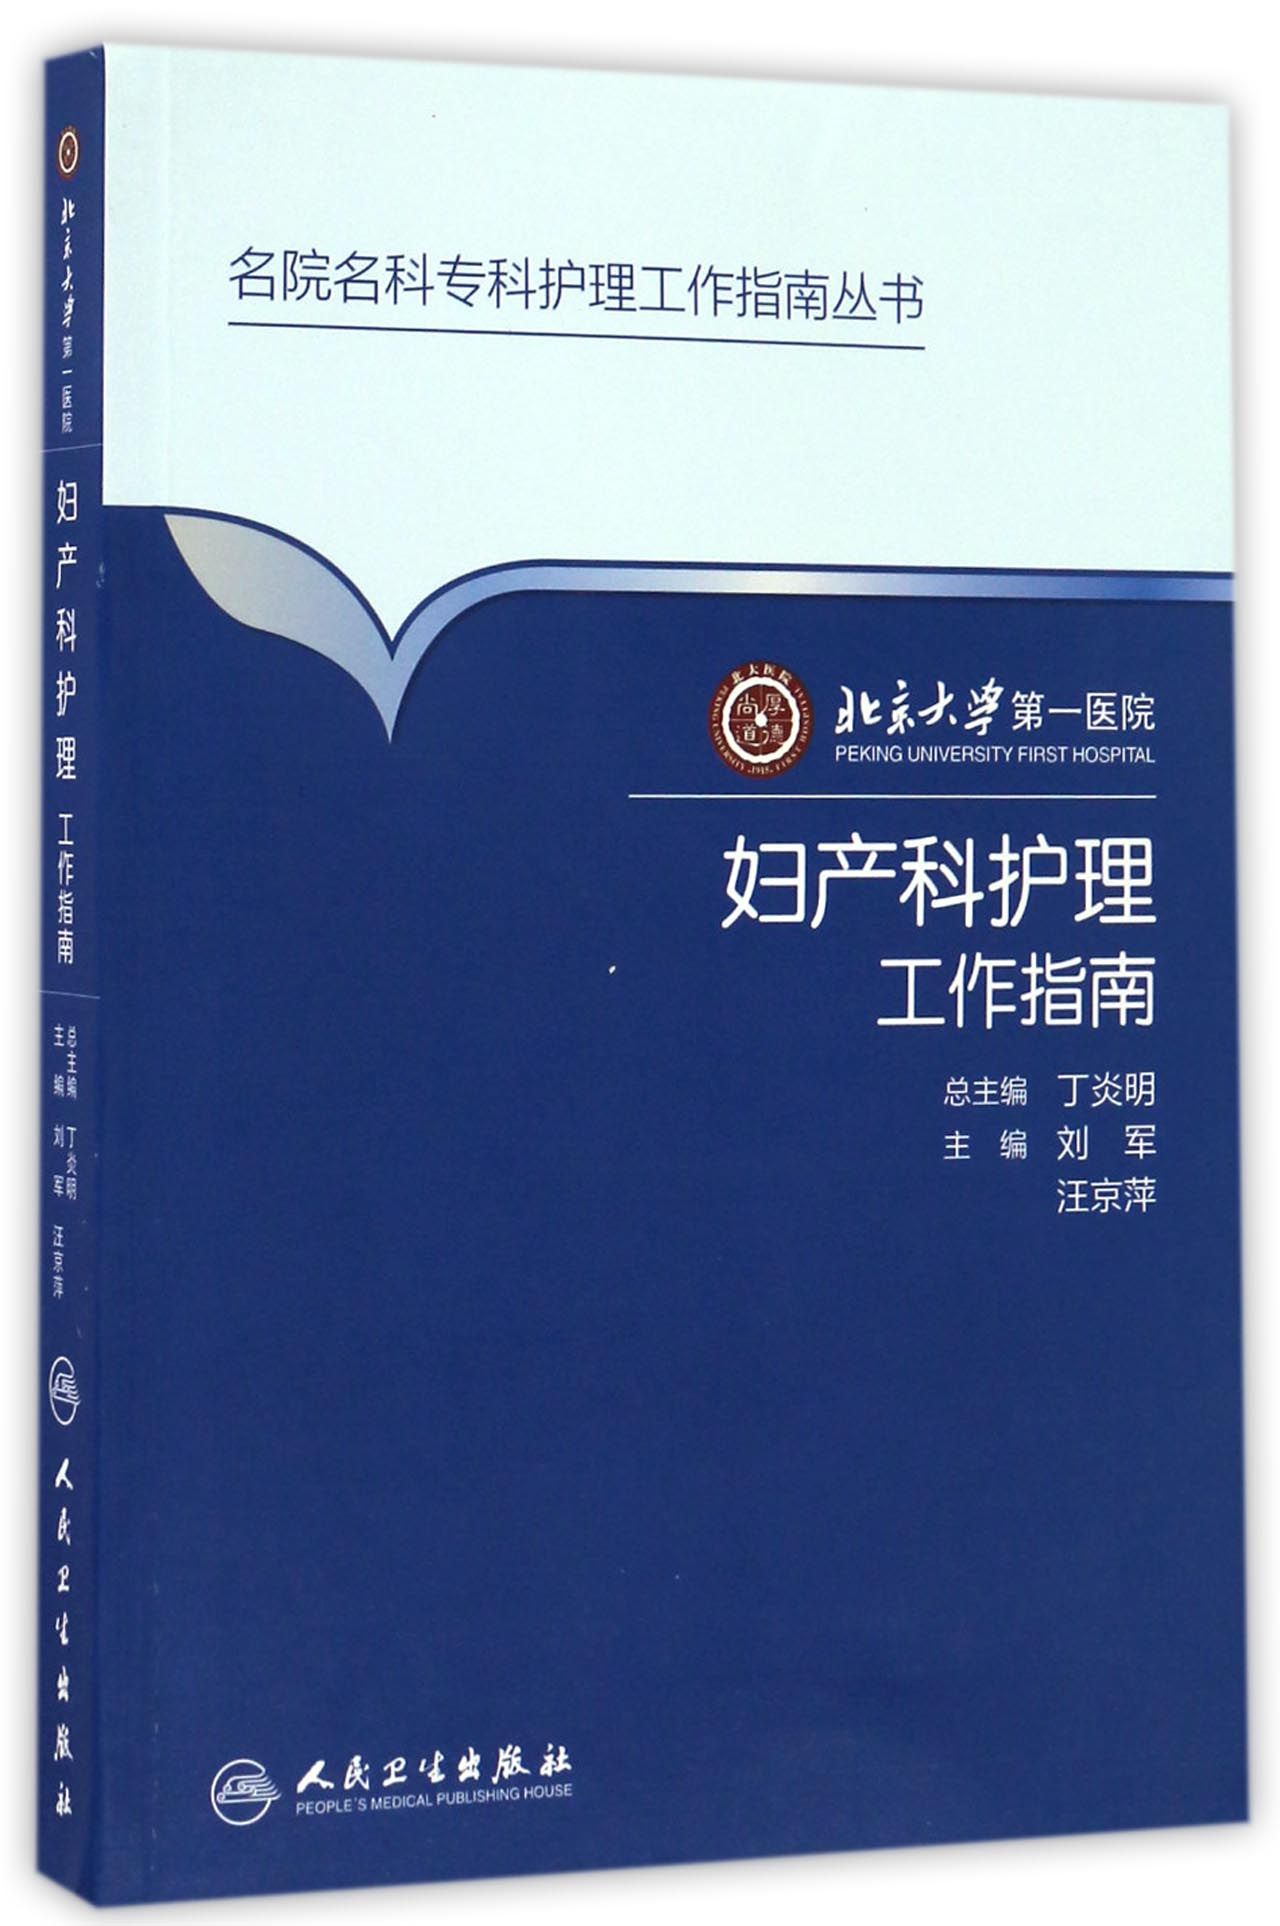 北京大学第一医院妇产科护理工作指南 azw3格式下载